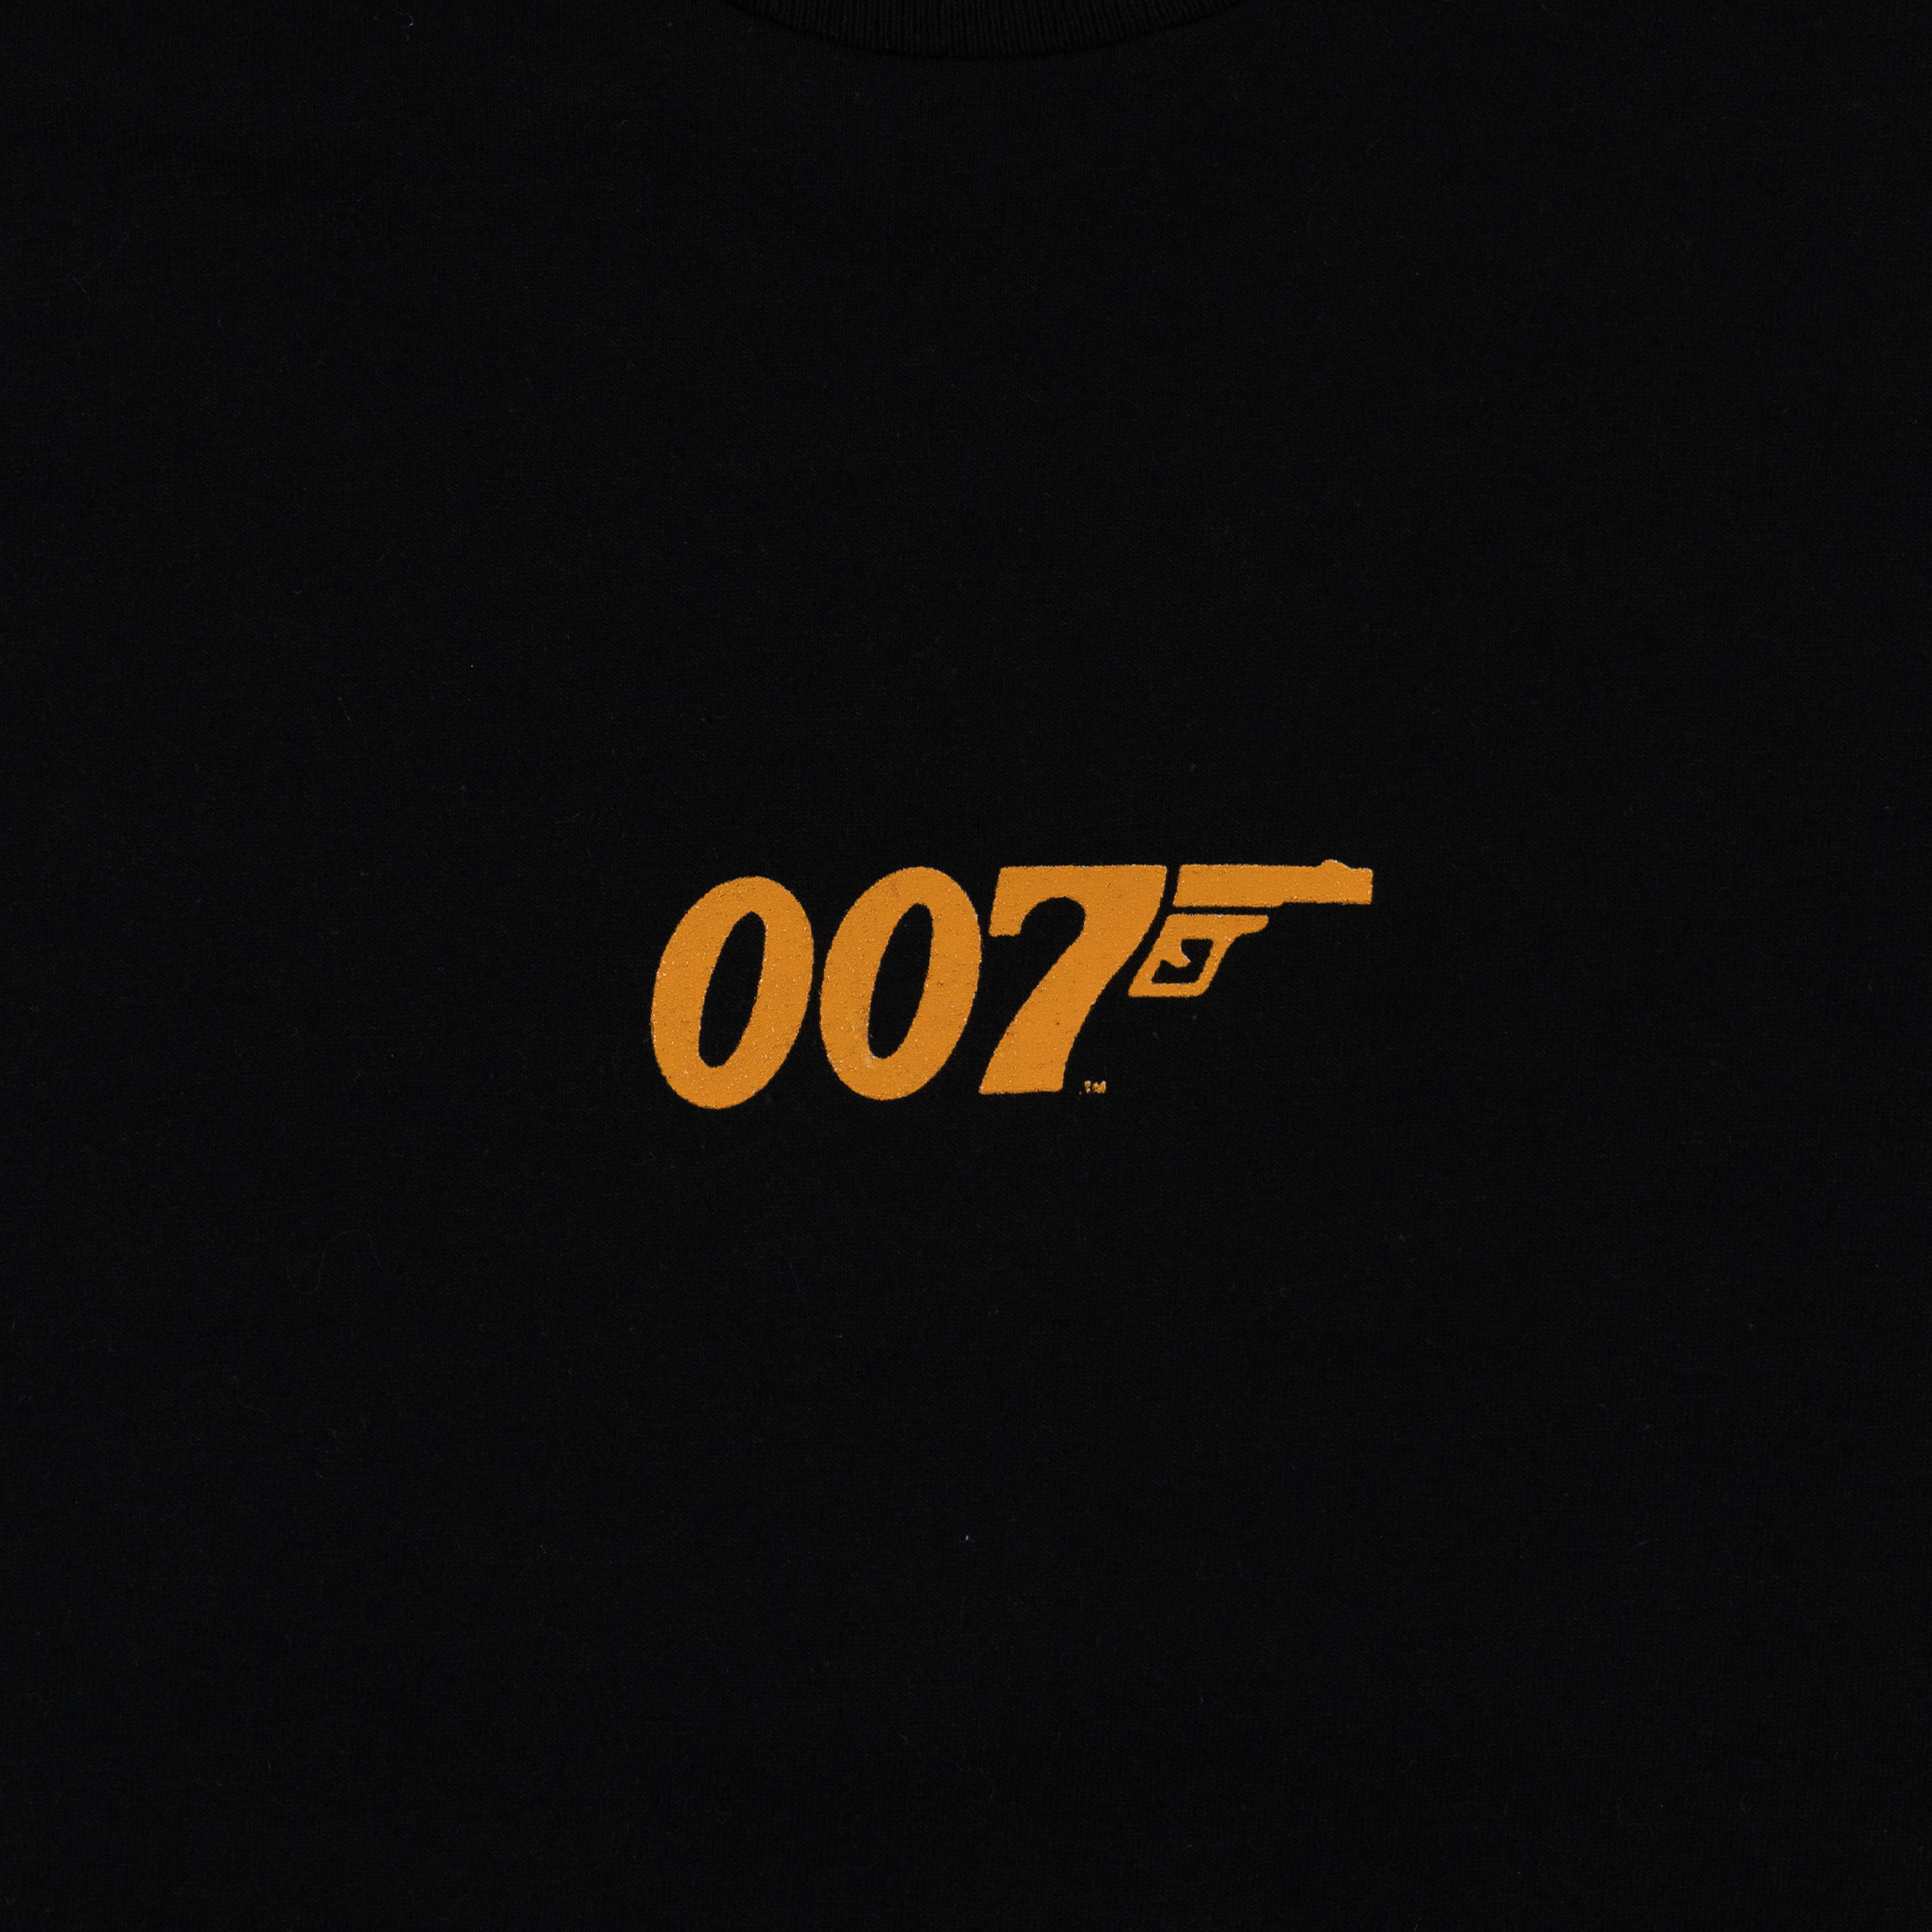 007 Goldeneye 1995 Tee Black-PLUS